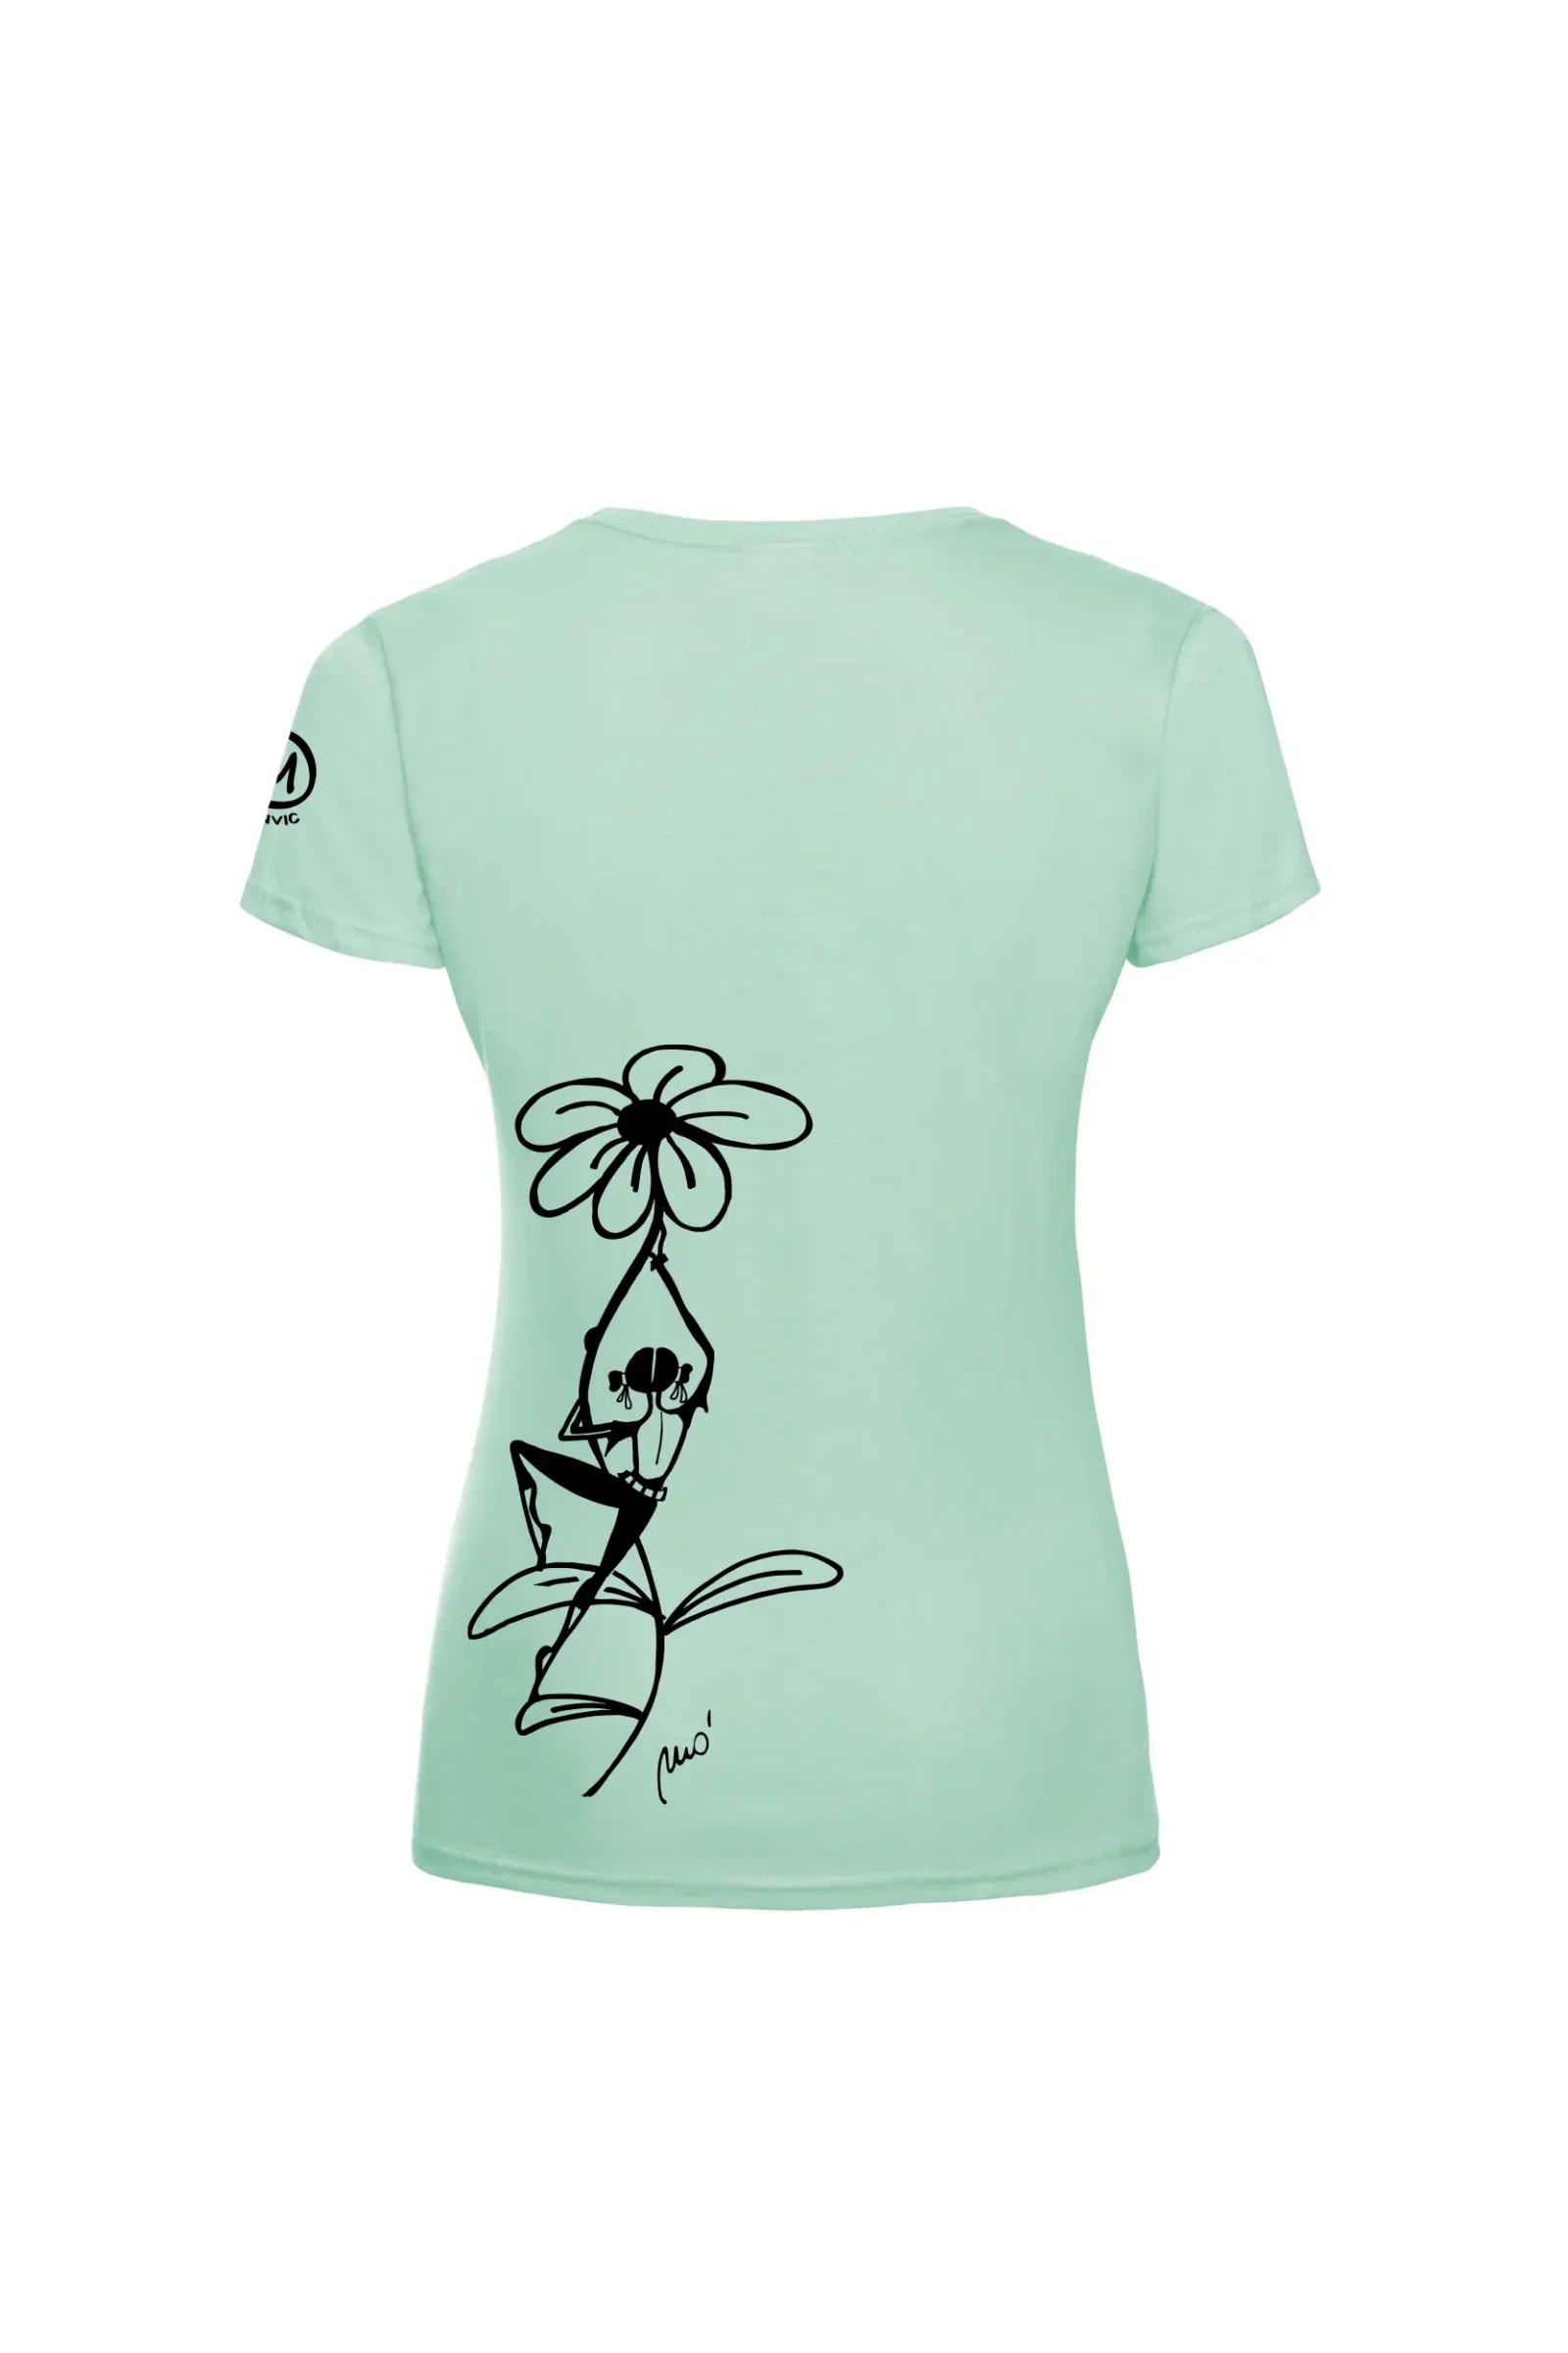 T-shirt escalade femme - aqua coton bio - "Carla" SHARON ORGANIC by MONVIC